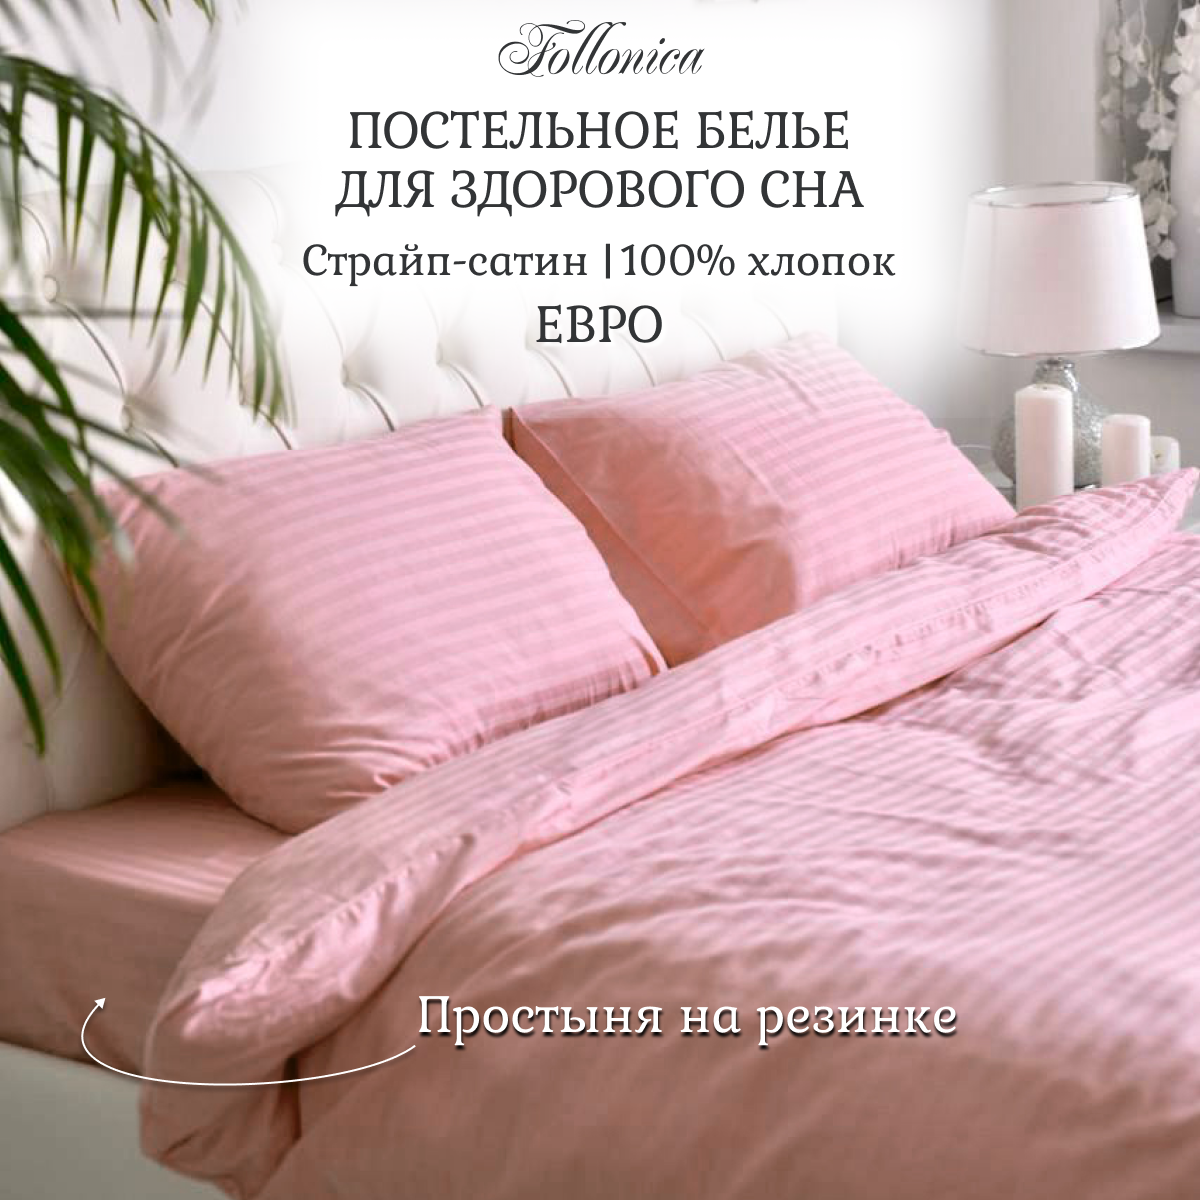 Постельное белье Follonica Stripe, размер евро, цвет розовый